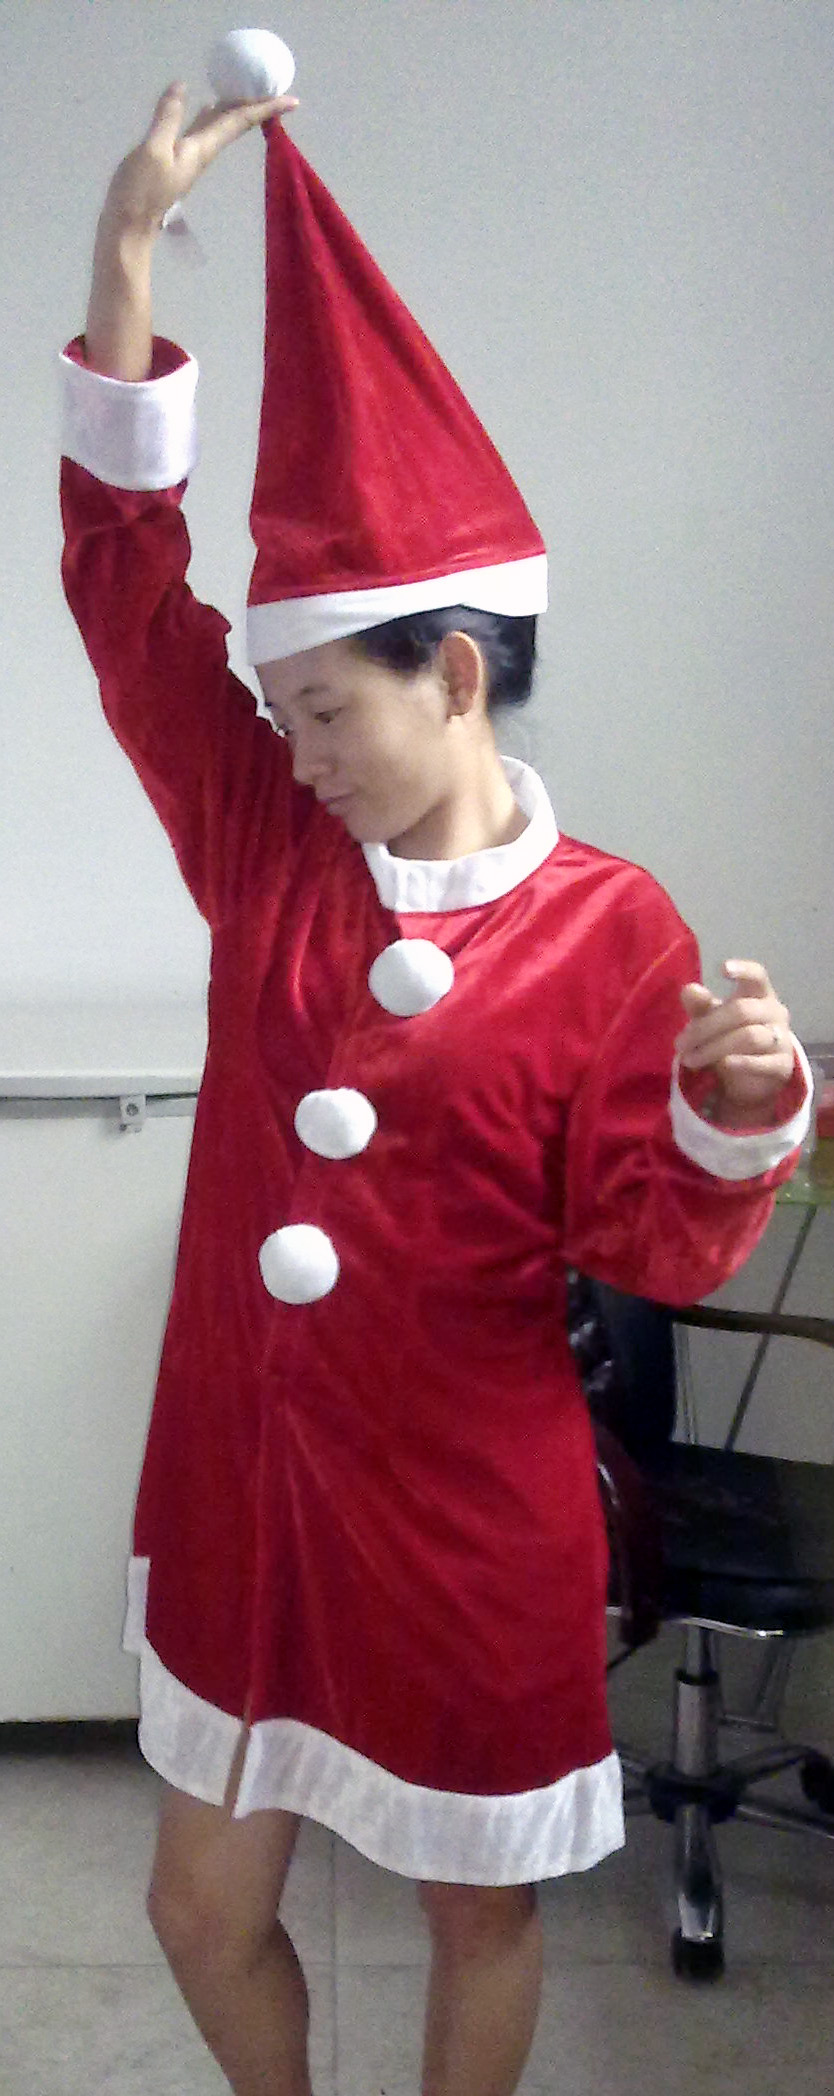 供应哈尔滨酒店小姐服饰圣诞节服装亮片帽定做 啦啦服供应商